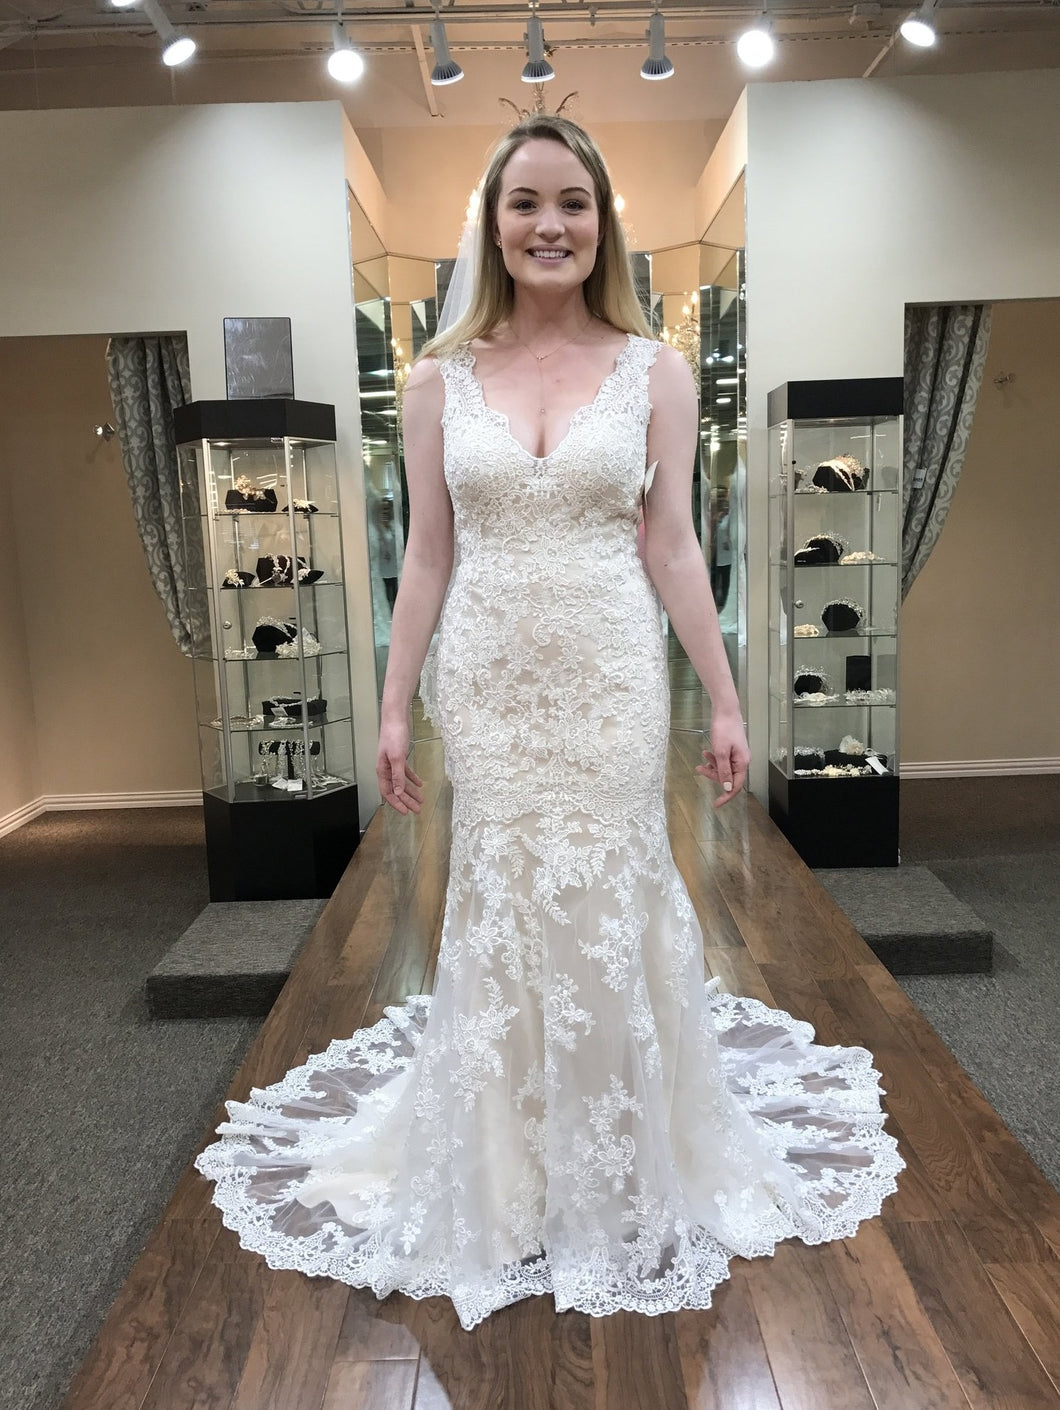 Madison James '62536' wedding dress size-06 NEW